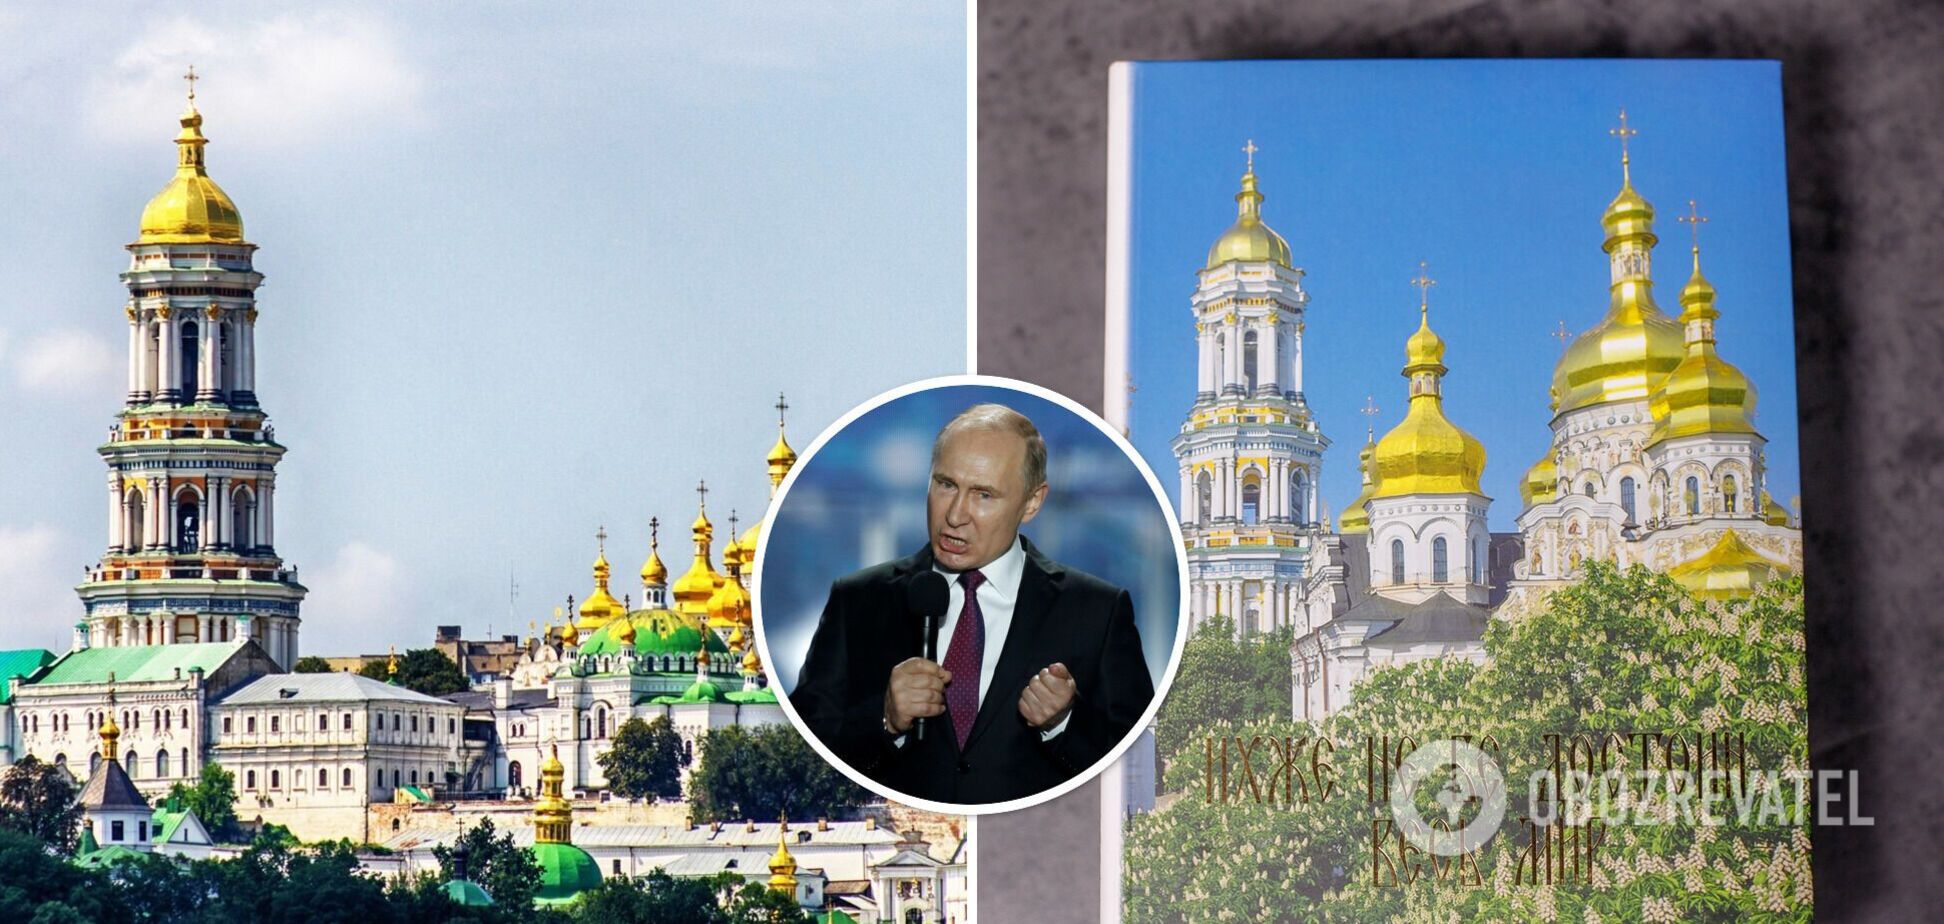 Лавра продает книгу, где авторы благодарят Путина